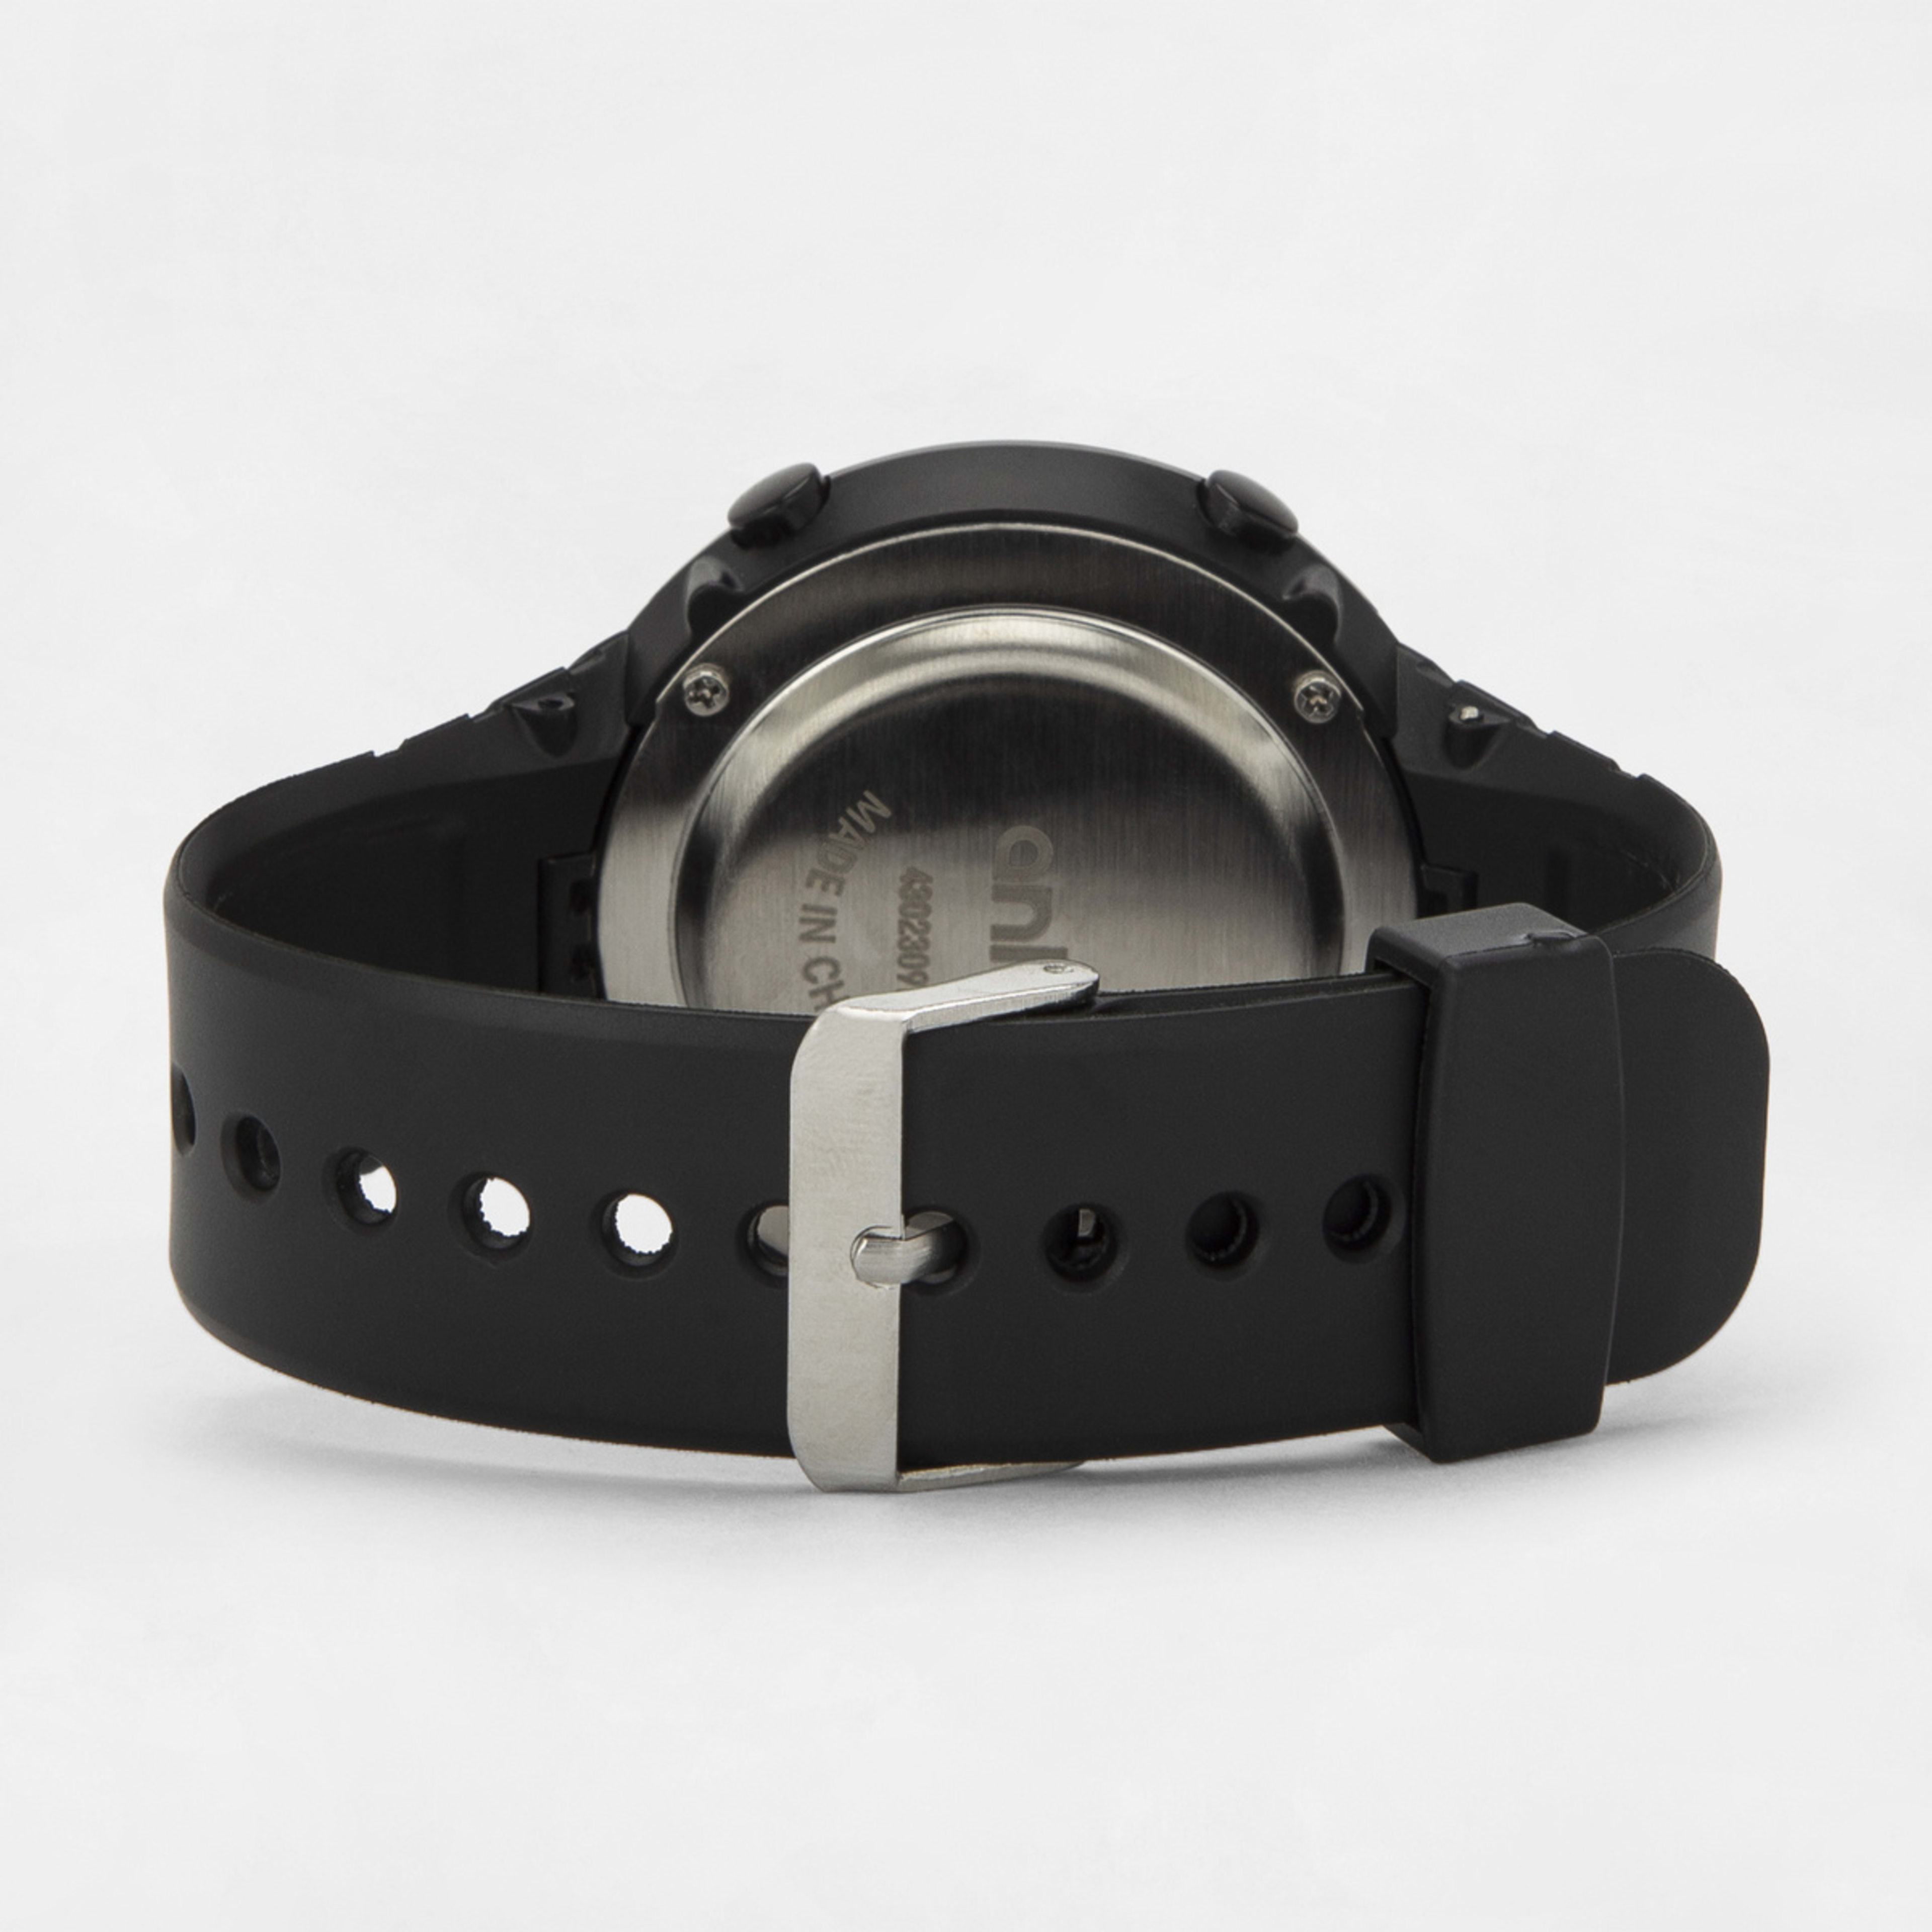 Slim Round Digital Watch - Black - Kmart